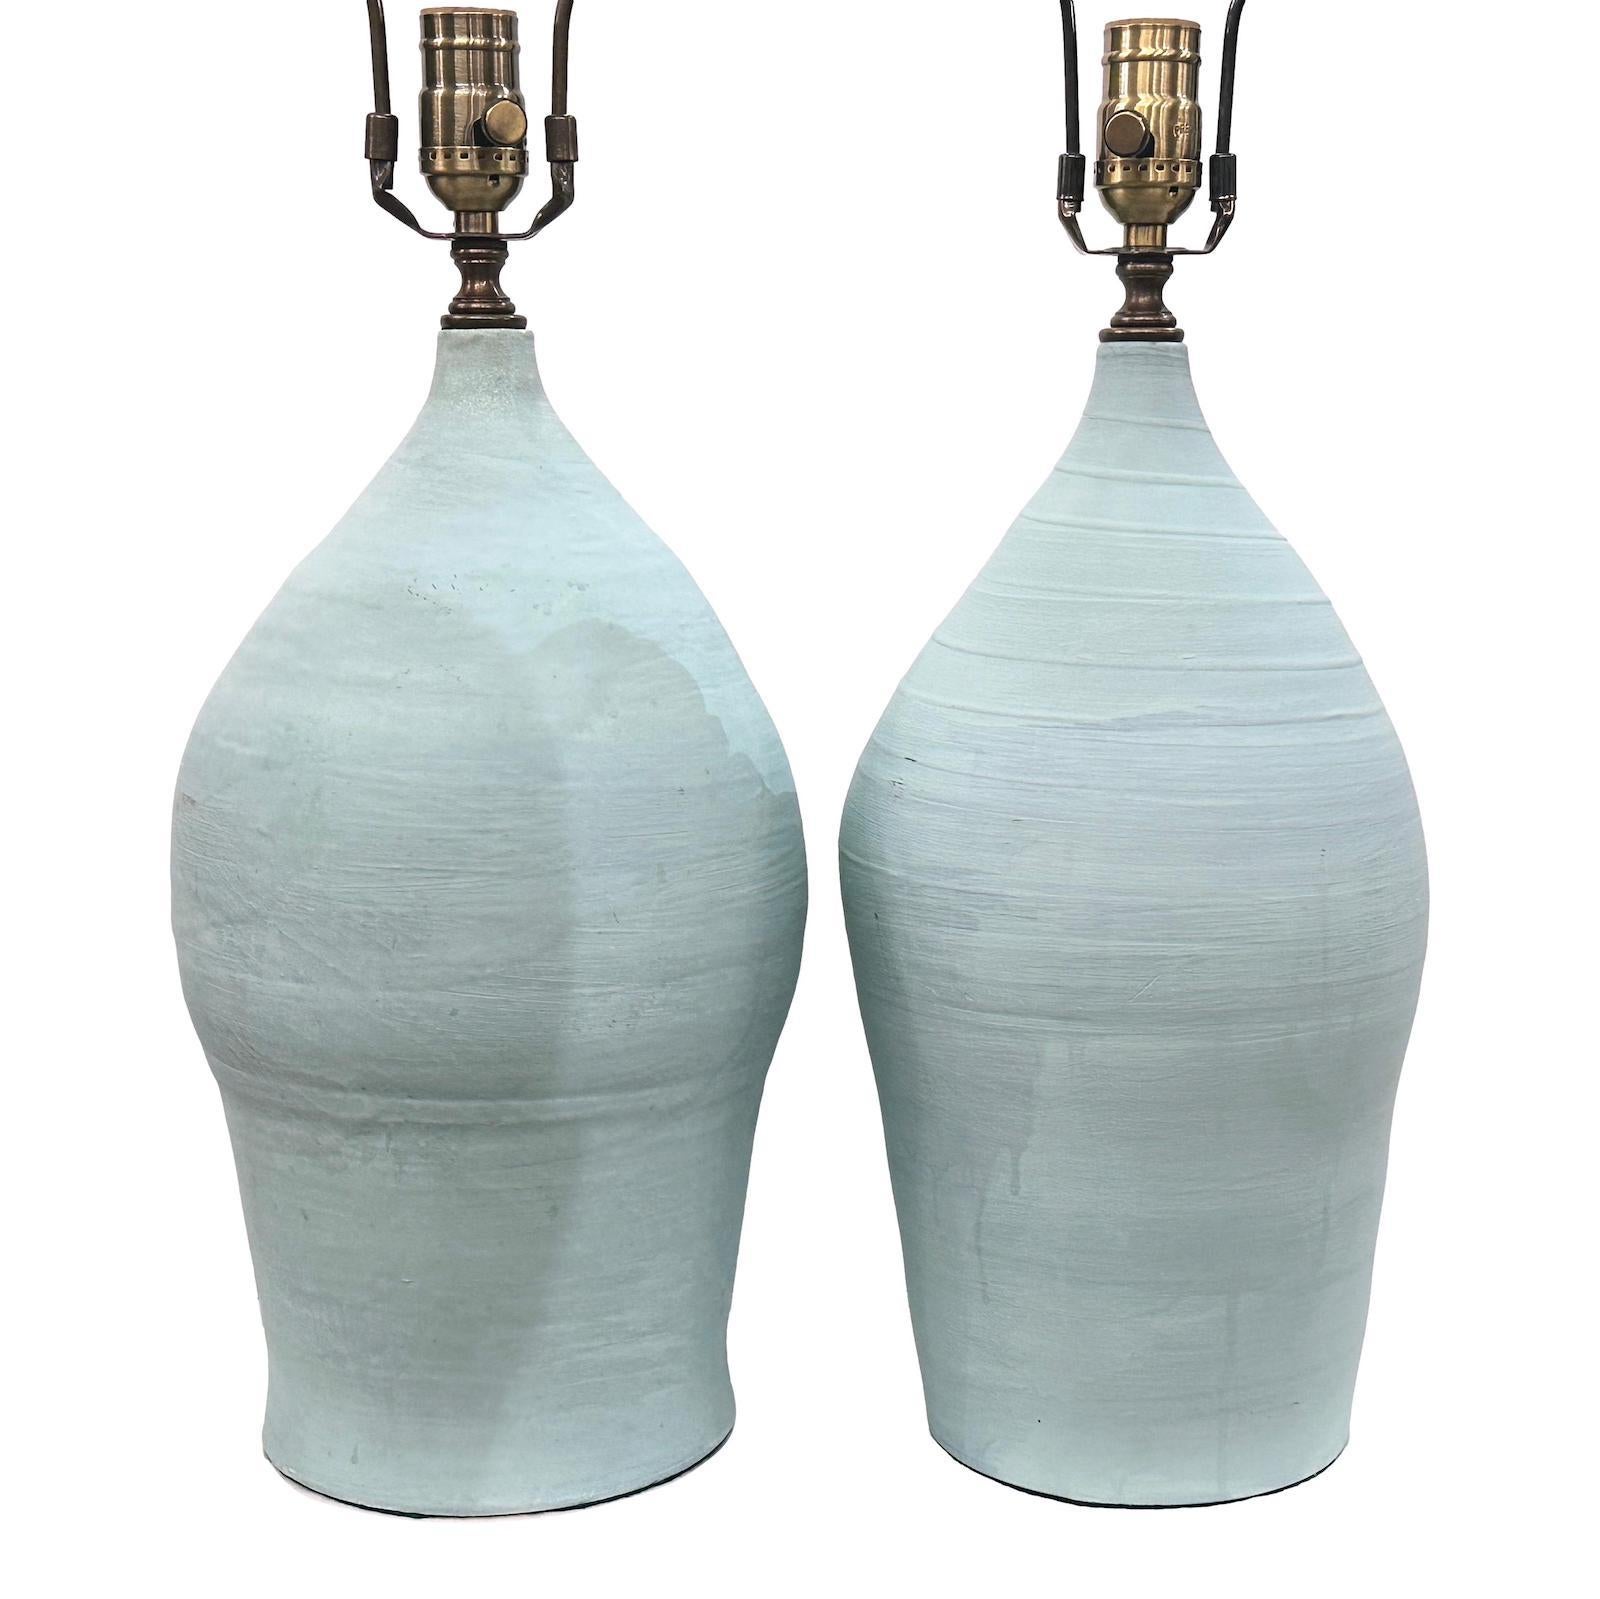 Ein Paar italienische Keramik-Tischlampen aus den 1950er Jahren.

Abmessungen:
Höhe des Körpers: 16″.
Höhe bis zur Schirmauflage: 26″.
Durchmesser: 7″